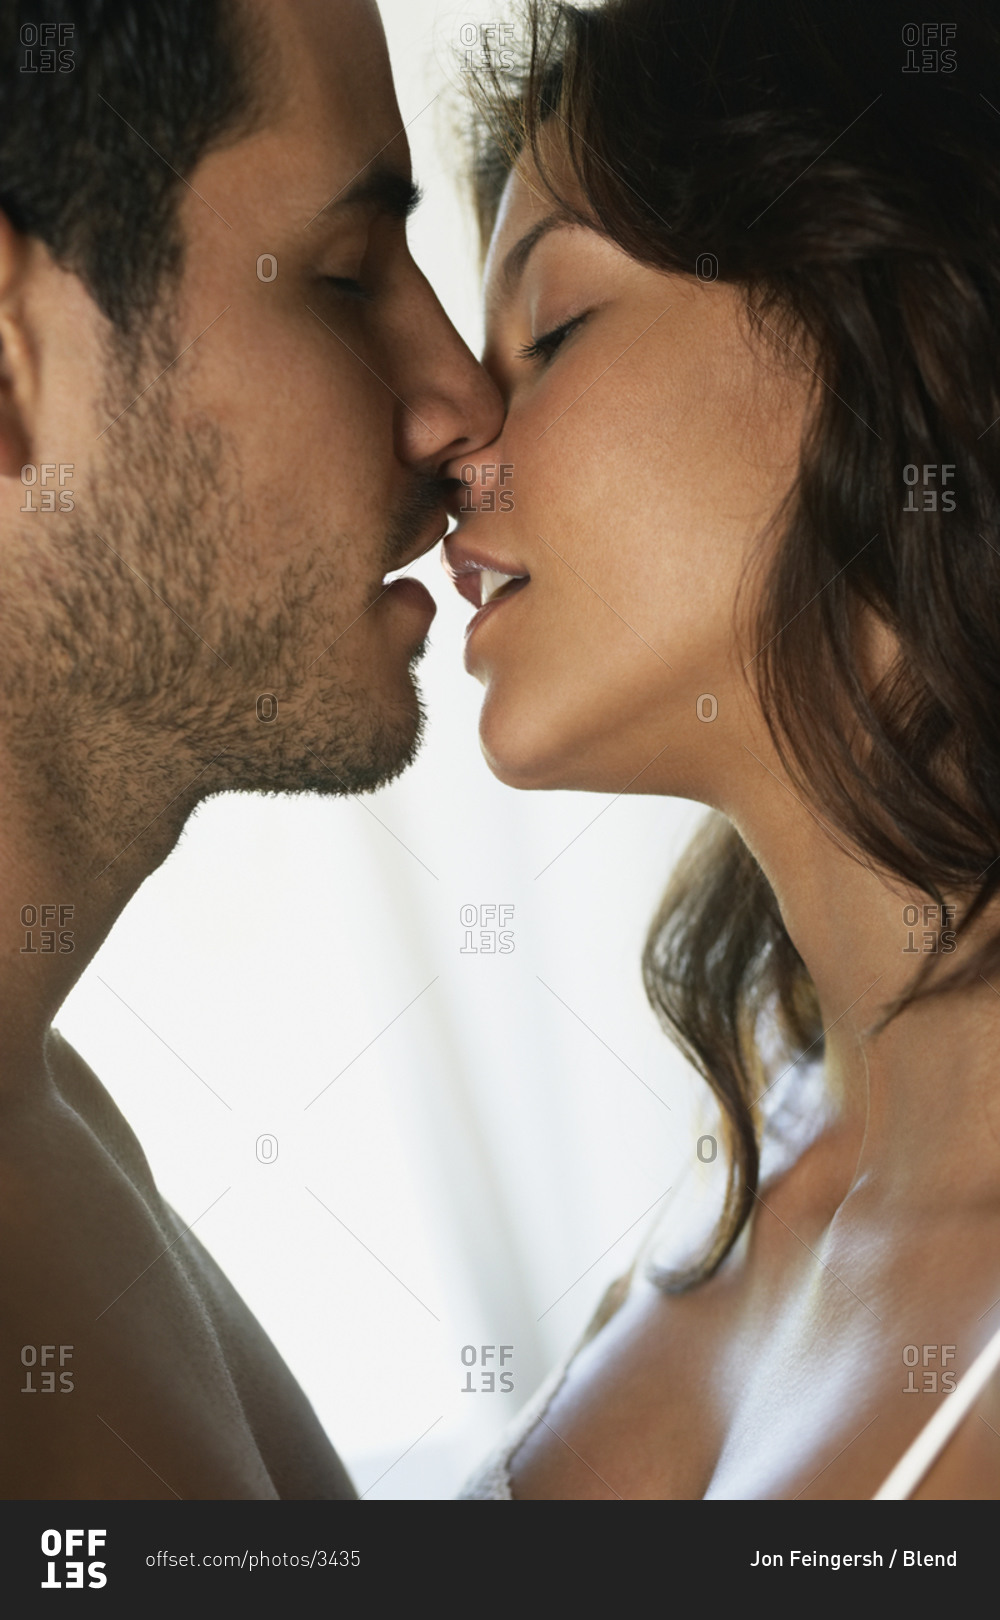 Hot latina kiss